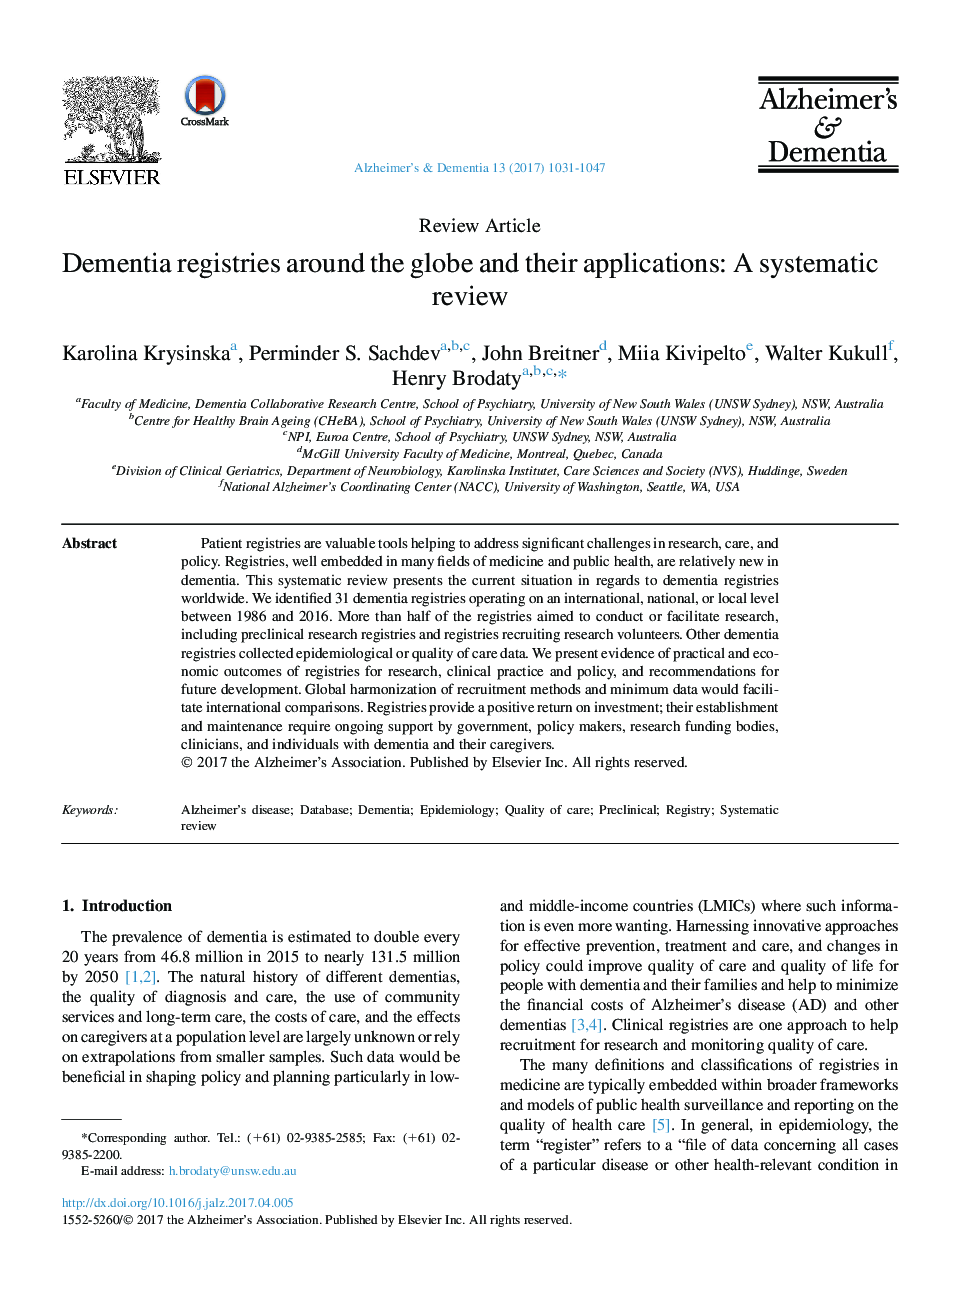 بررسی قوانین ثبت نام دیمنتیا در سراسر جهان و برنامه های کاربردی آنها: بررسی سیستماتیک 